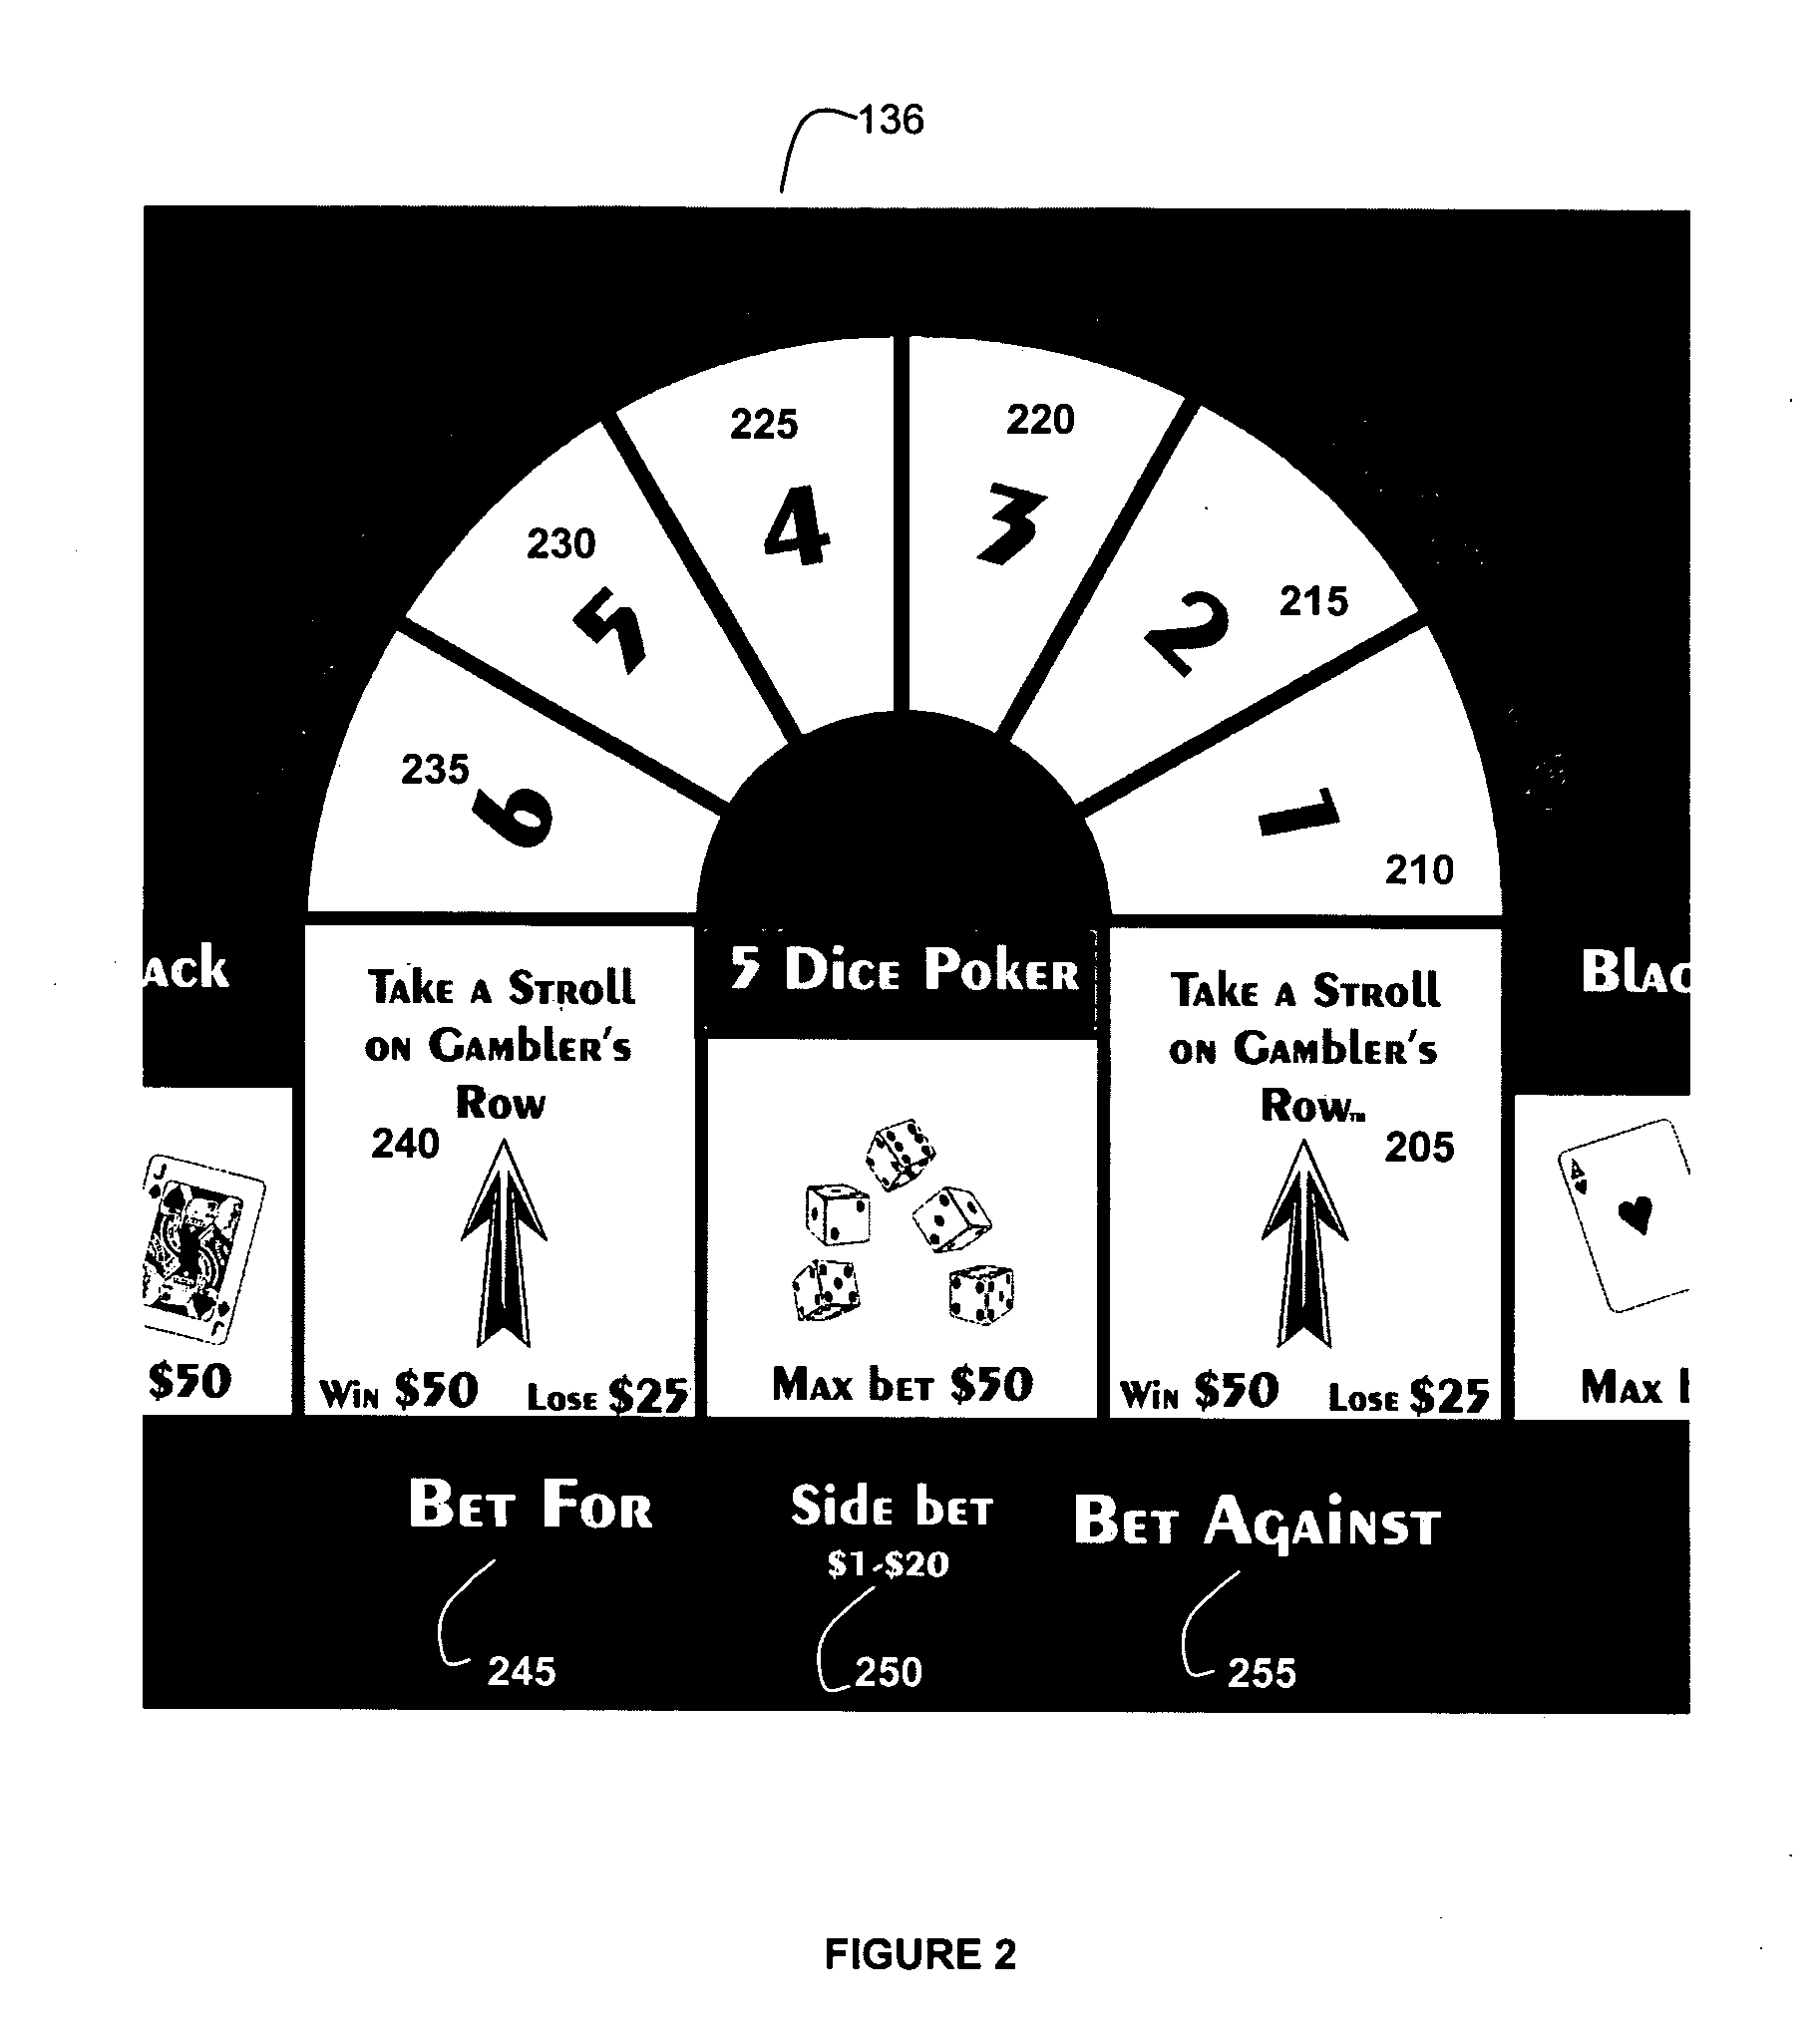 Gambling-style board game